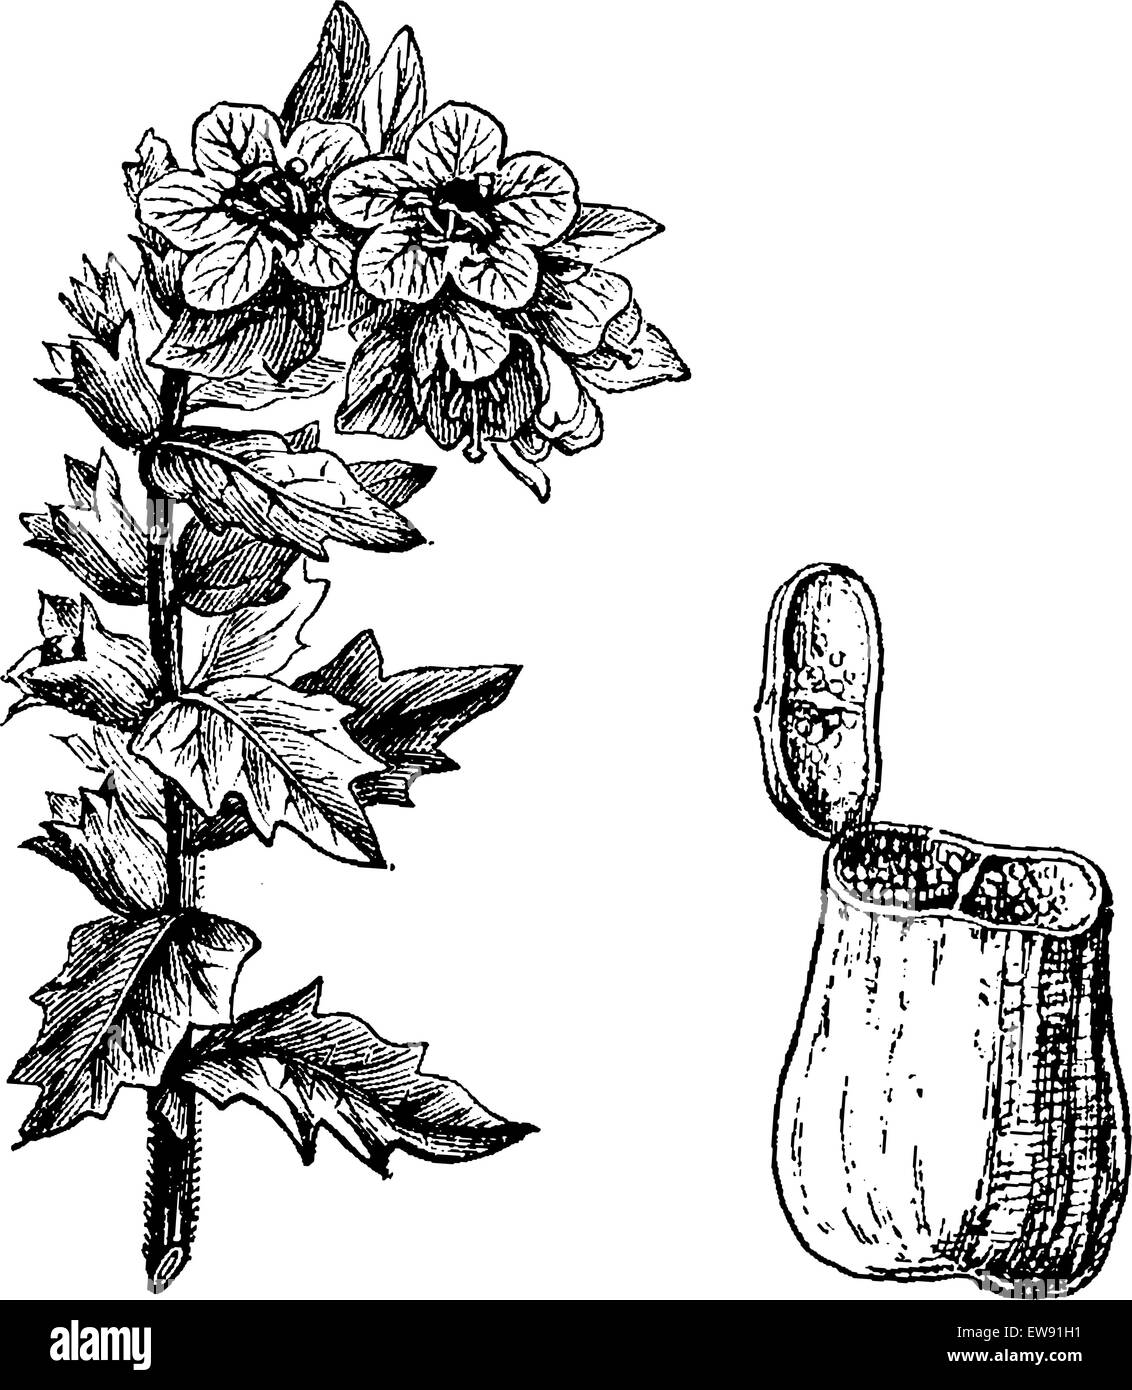 Schwarzes Bilsenkraut oder Hyoscyamus Niger, mit Blumen und Samenkapsel, graviert Vintage Illustration. Üblichen Medizin Wörterbuch von Dr. Stock Vektor